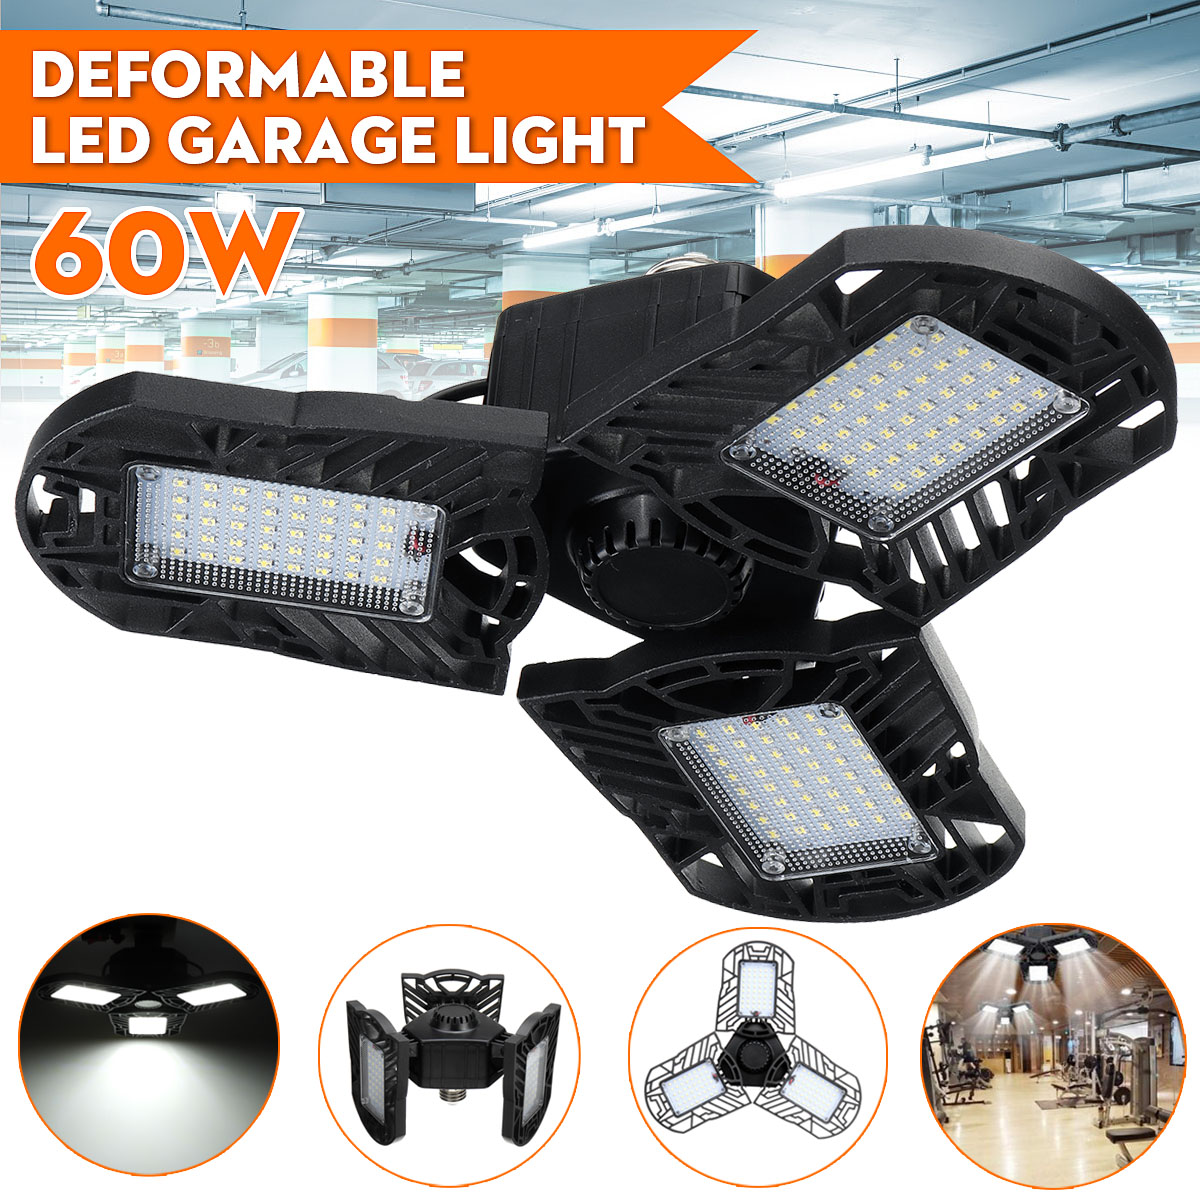 60W120W-85-265V-34-Deformable-LED-Garage-Lights-Workshop-Ceiling-Lamp-E26-E27-Base-1735754-6